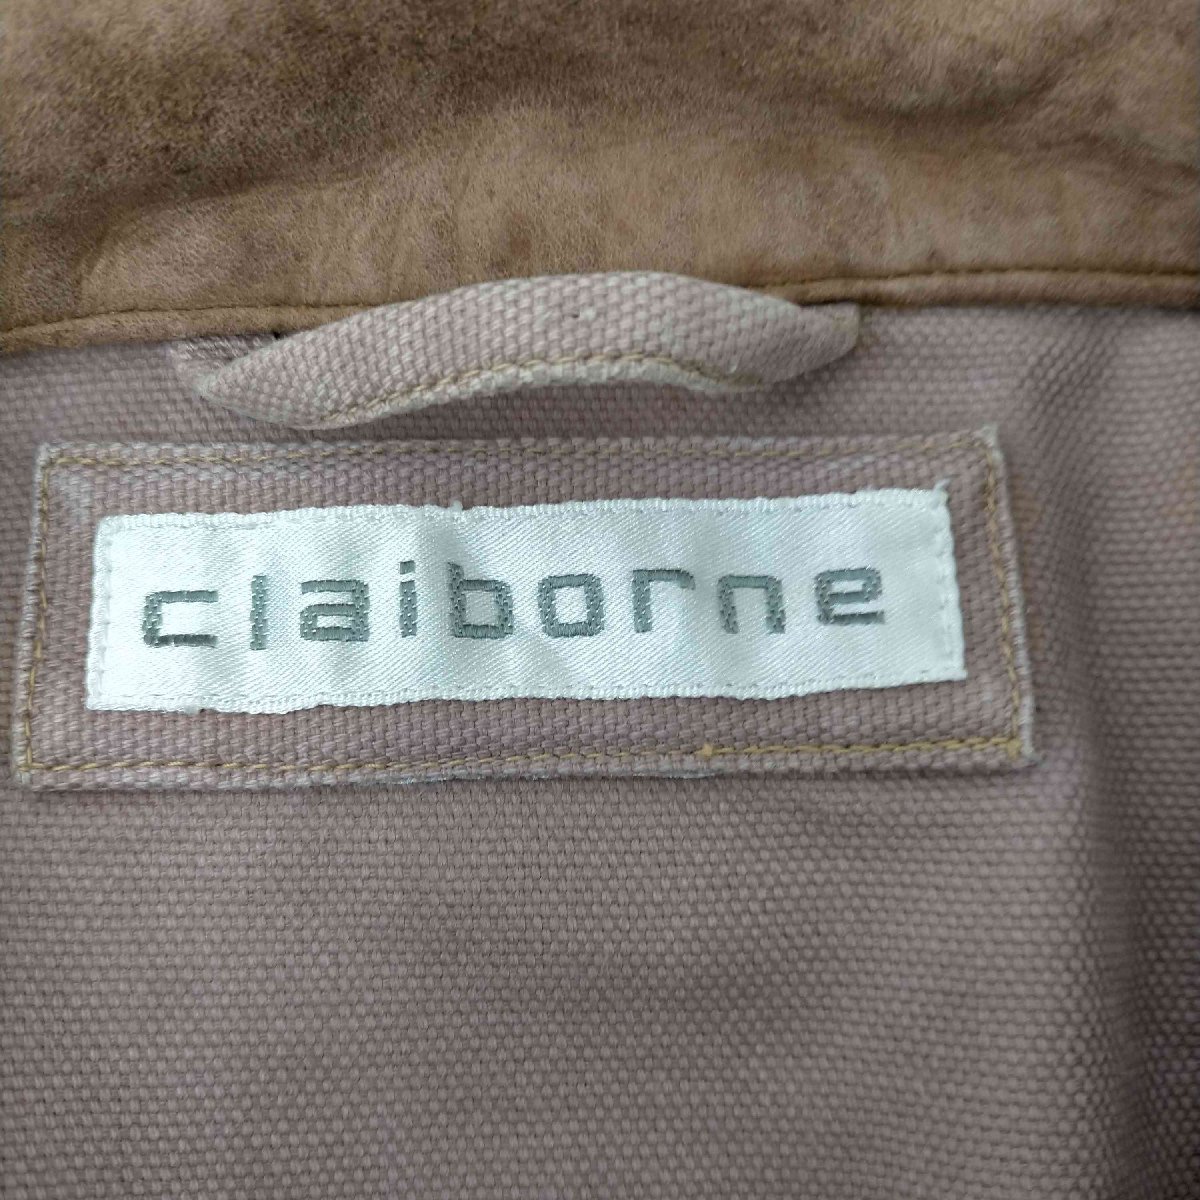 Claiborne(クレイボーン) レザー切替 エルボーパッチワークジャケット メンズ 表記無 中古 古着 0248_画像6